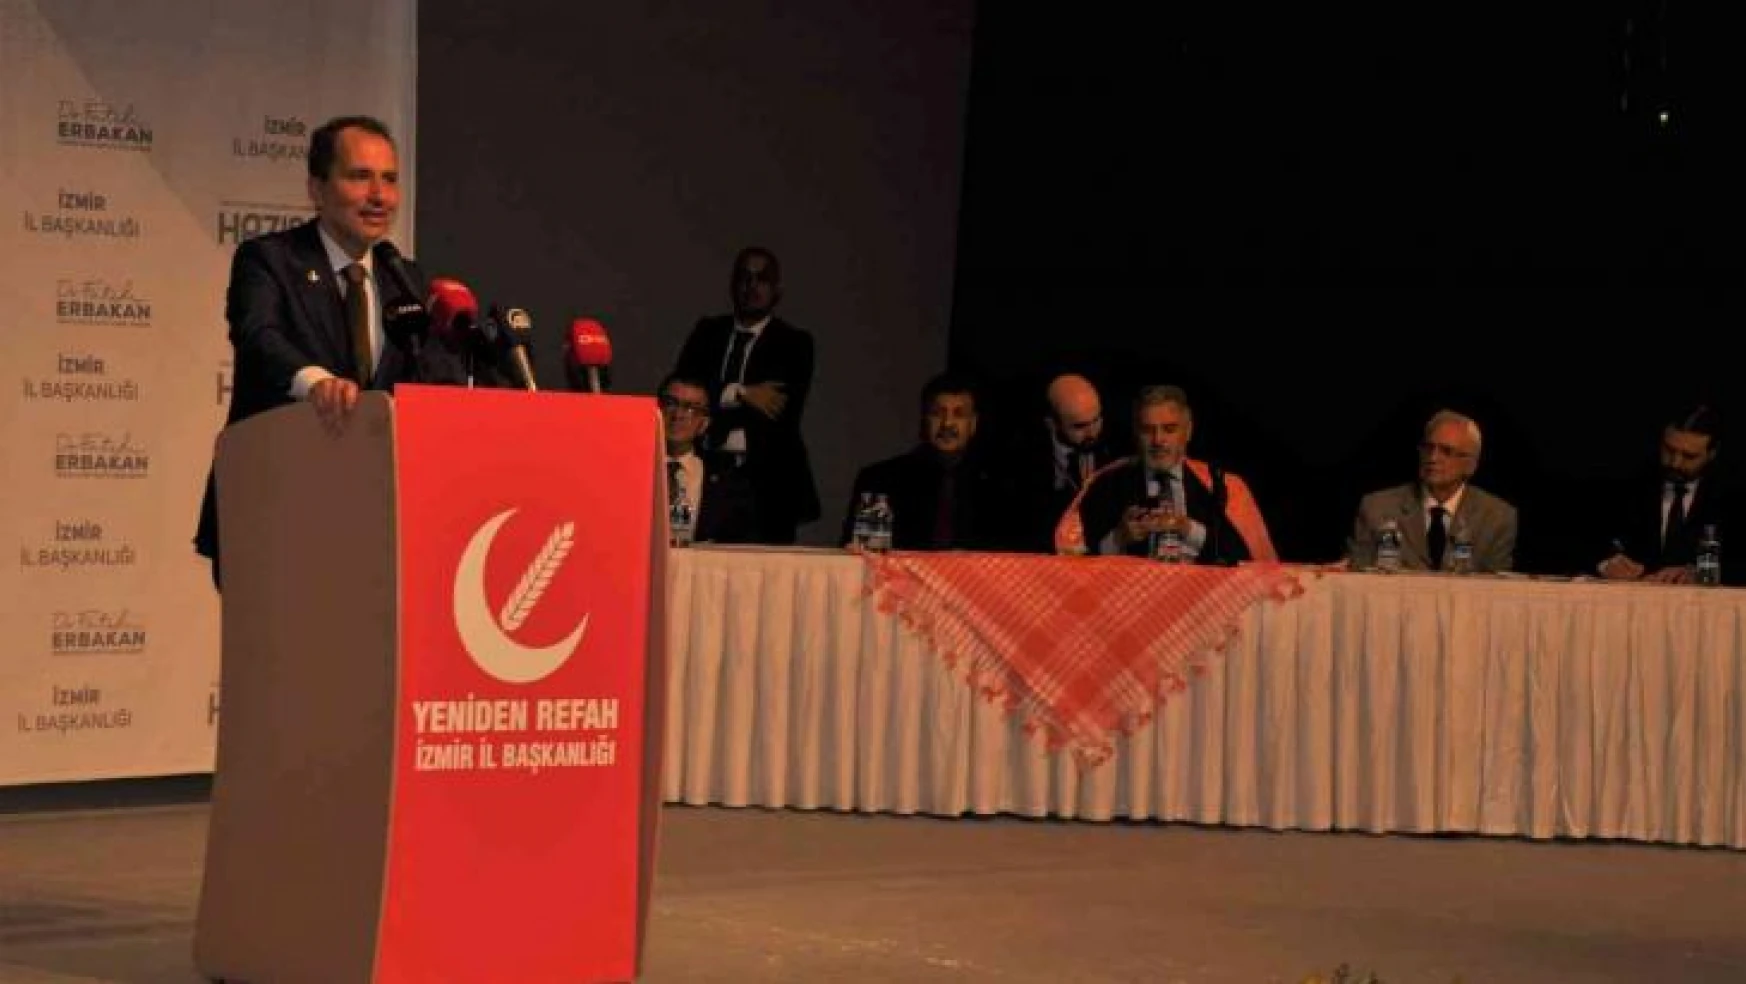 Yeniden Refah Partisinin 2. olağan kongresi İzmir'de gerçekleştirildi